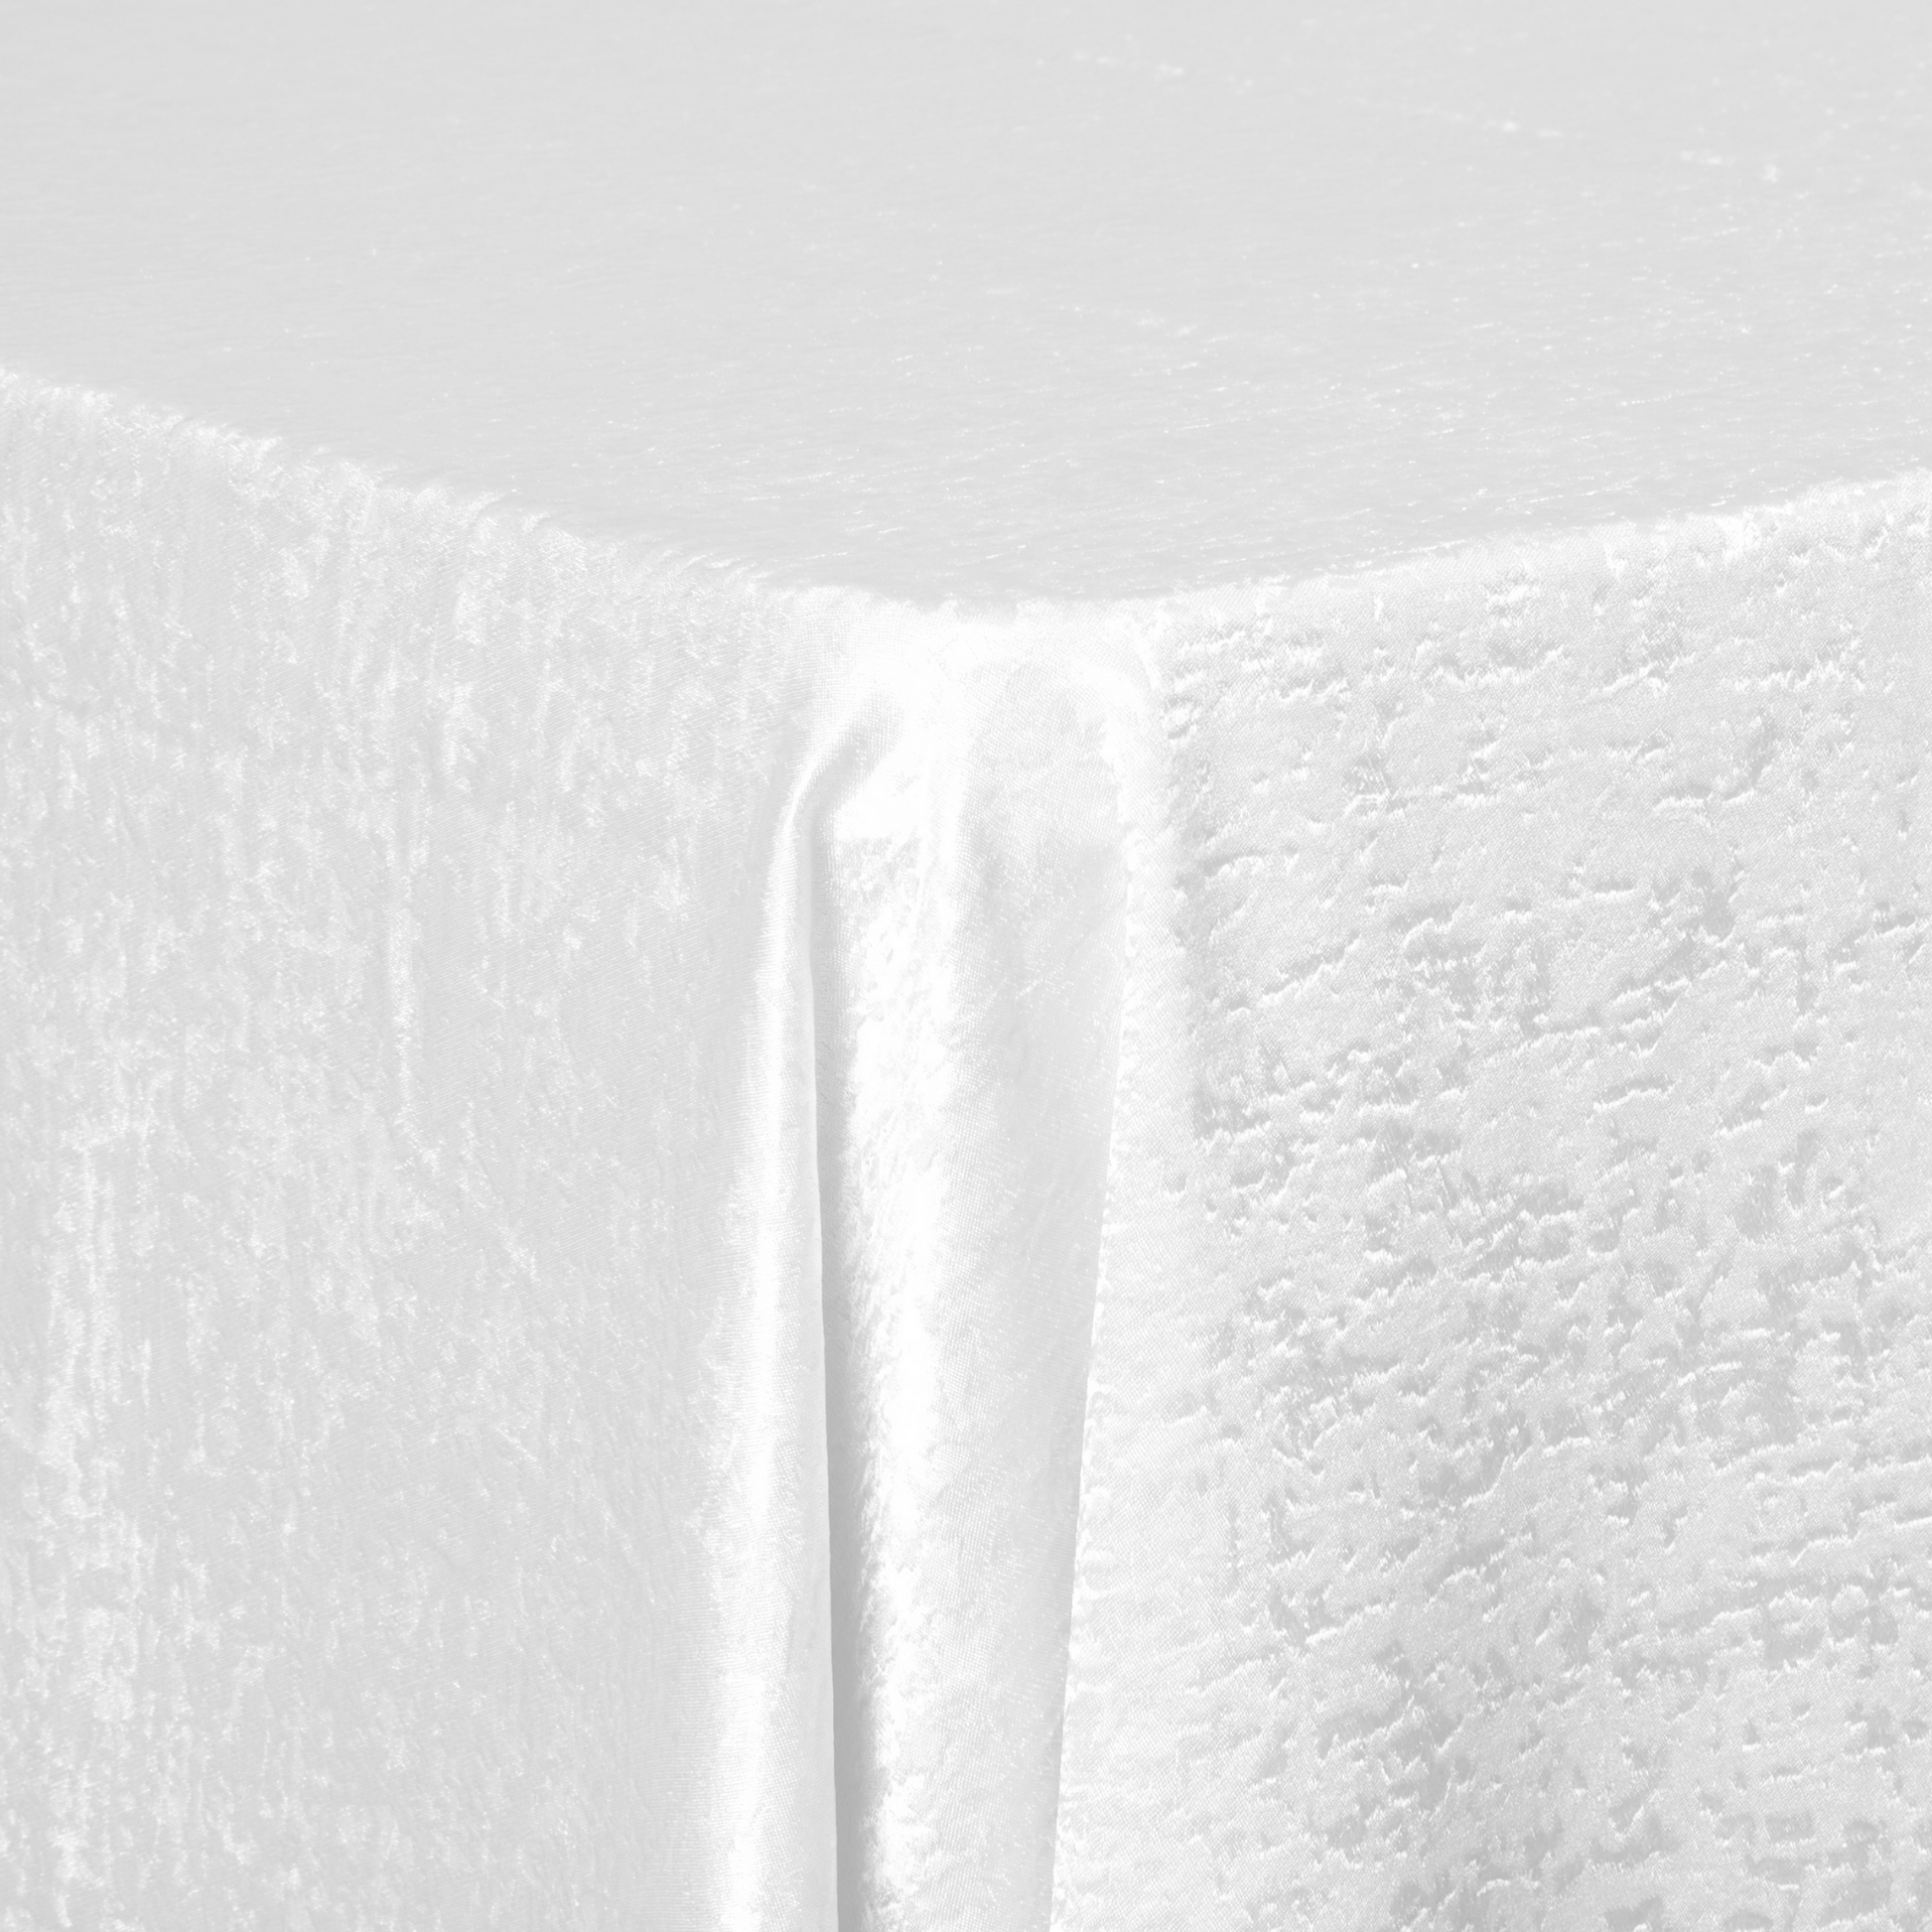 Crinkle Shimmer 90"x132" Rectangular Tablecloth - White